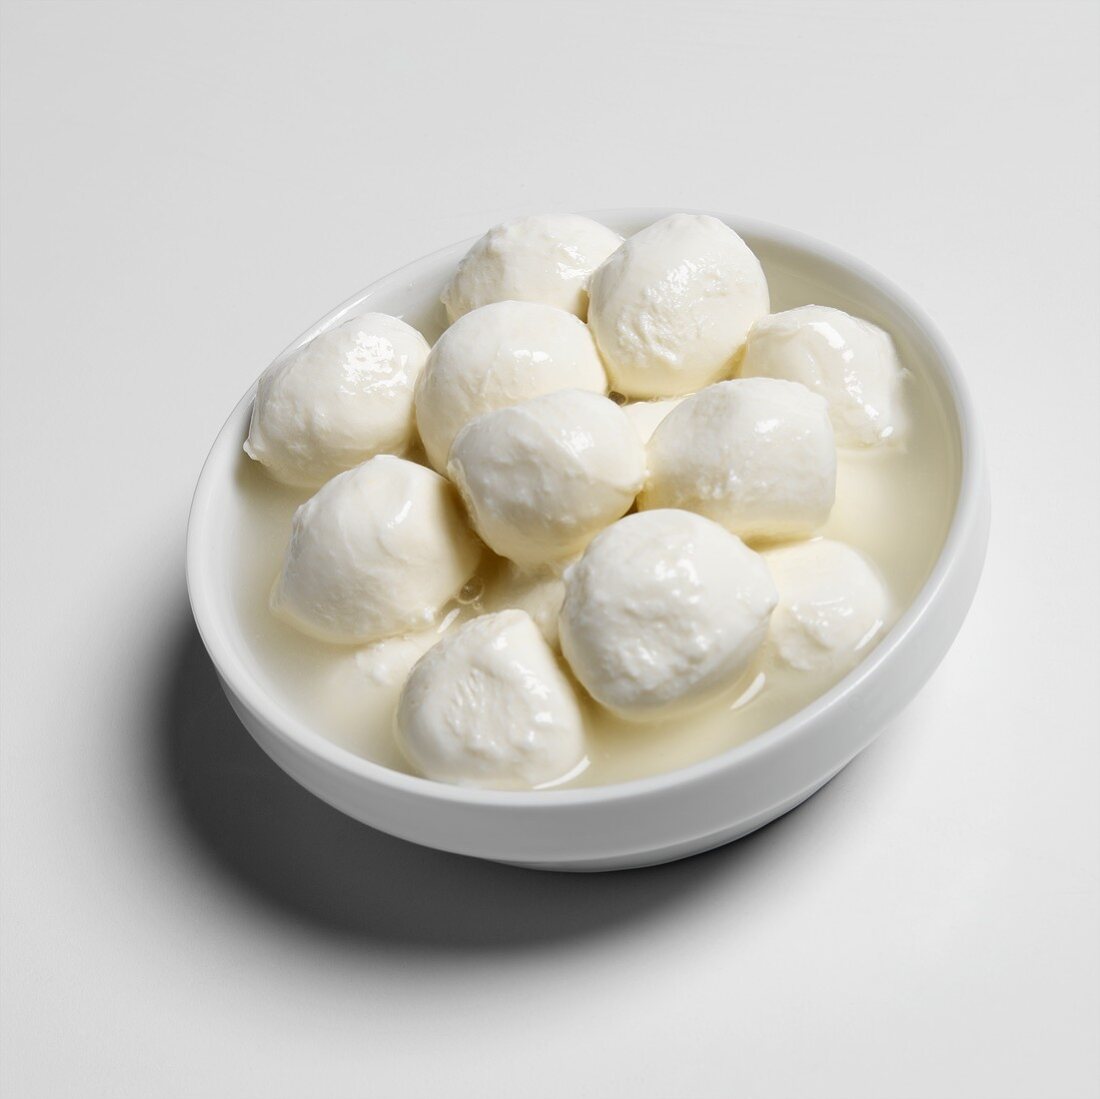 Mozzarella balls in white bowl